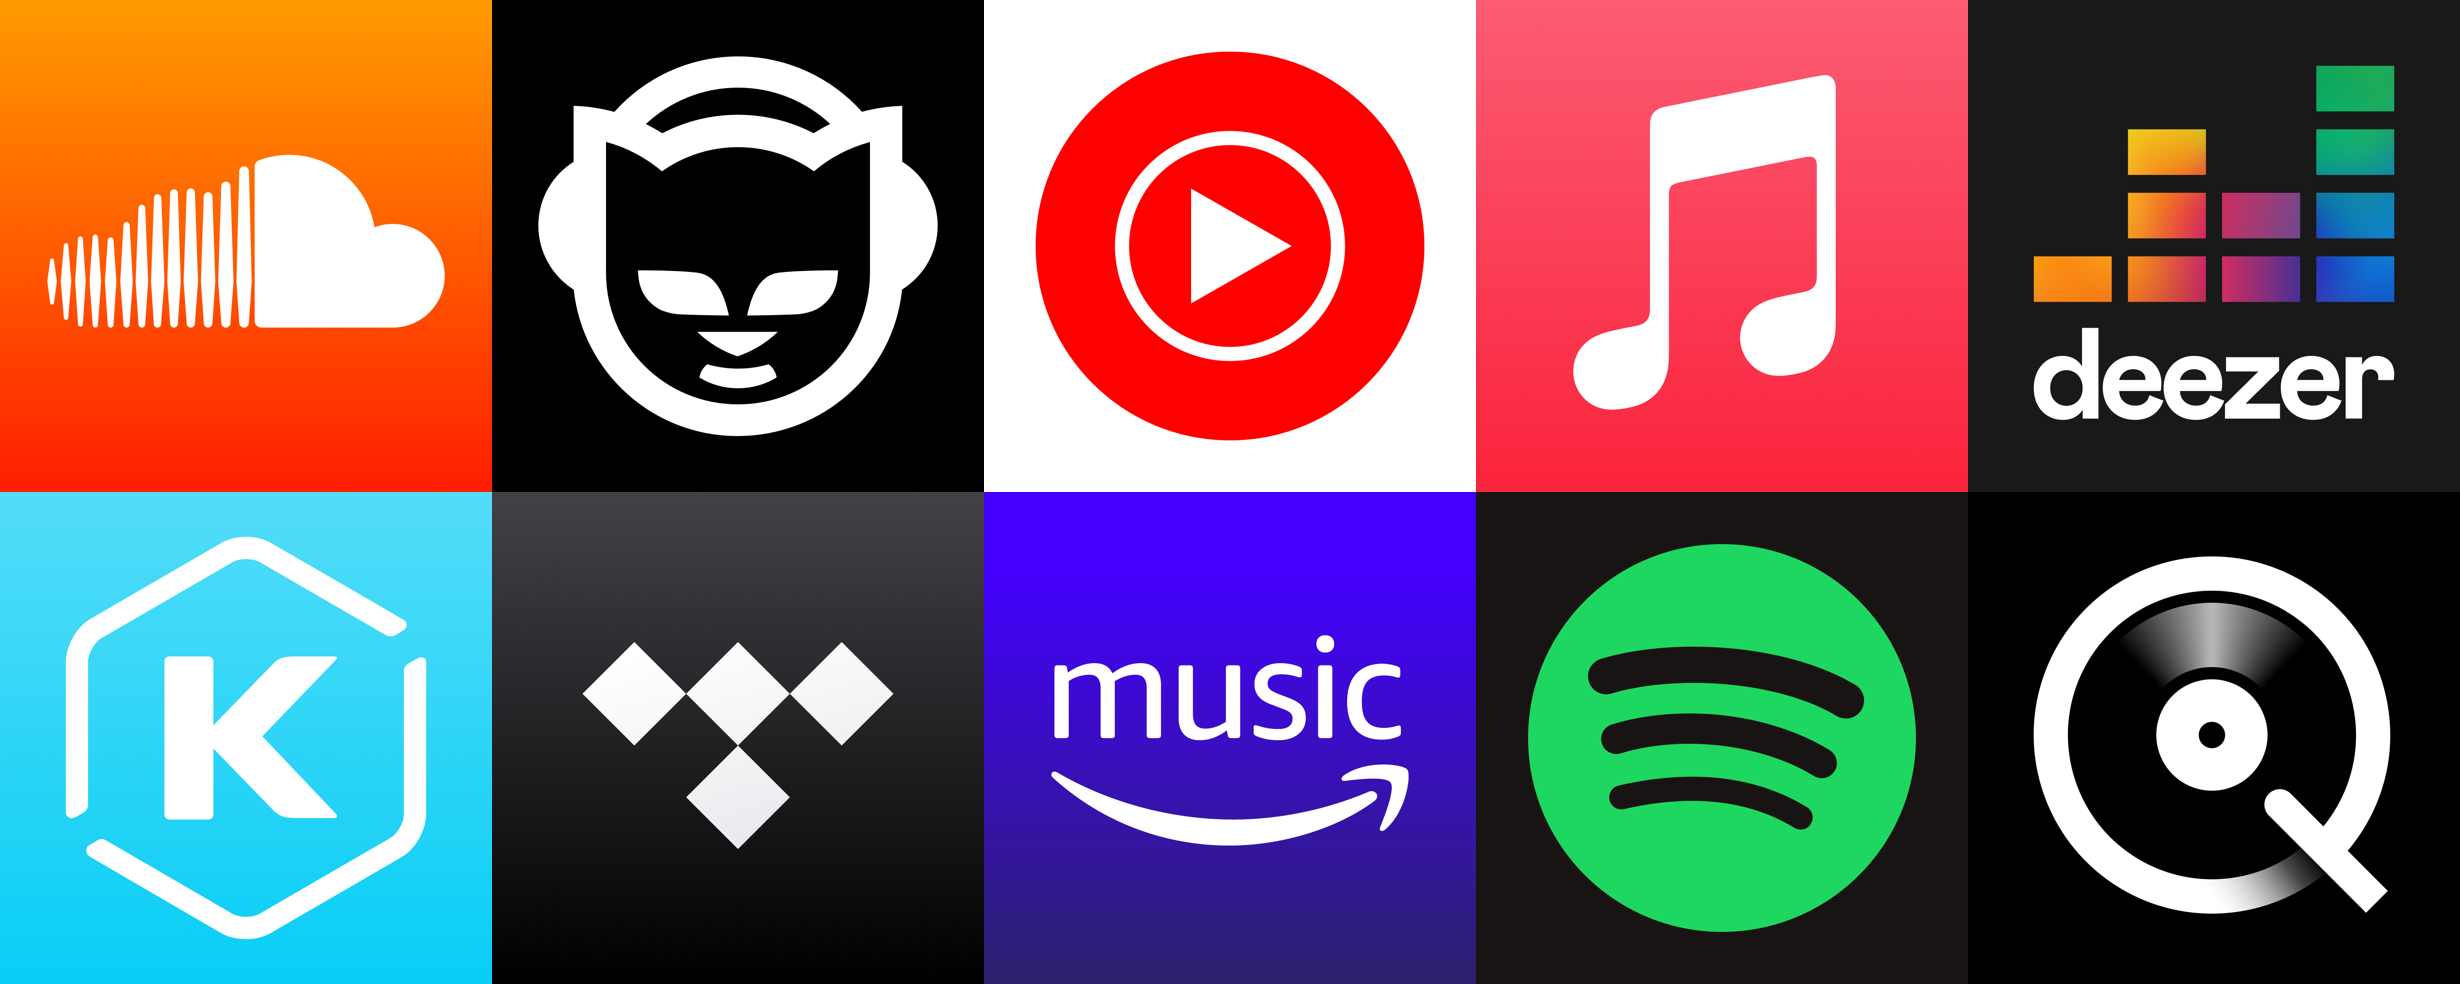 Top 10 music streaming platforms